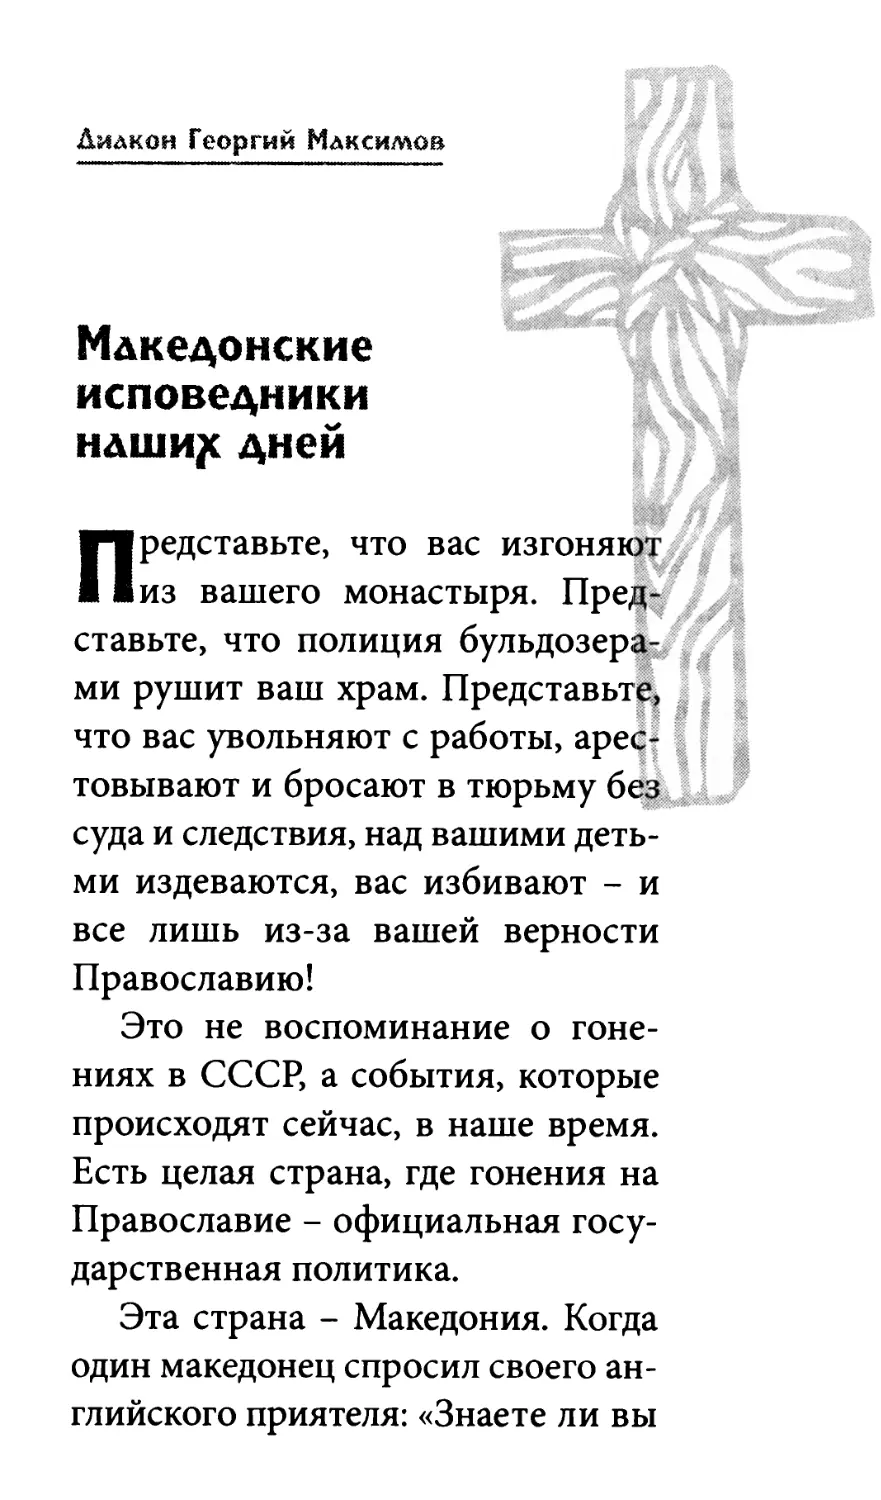 Македонские исповедники наших дней. Диакон Георгий Максимов